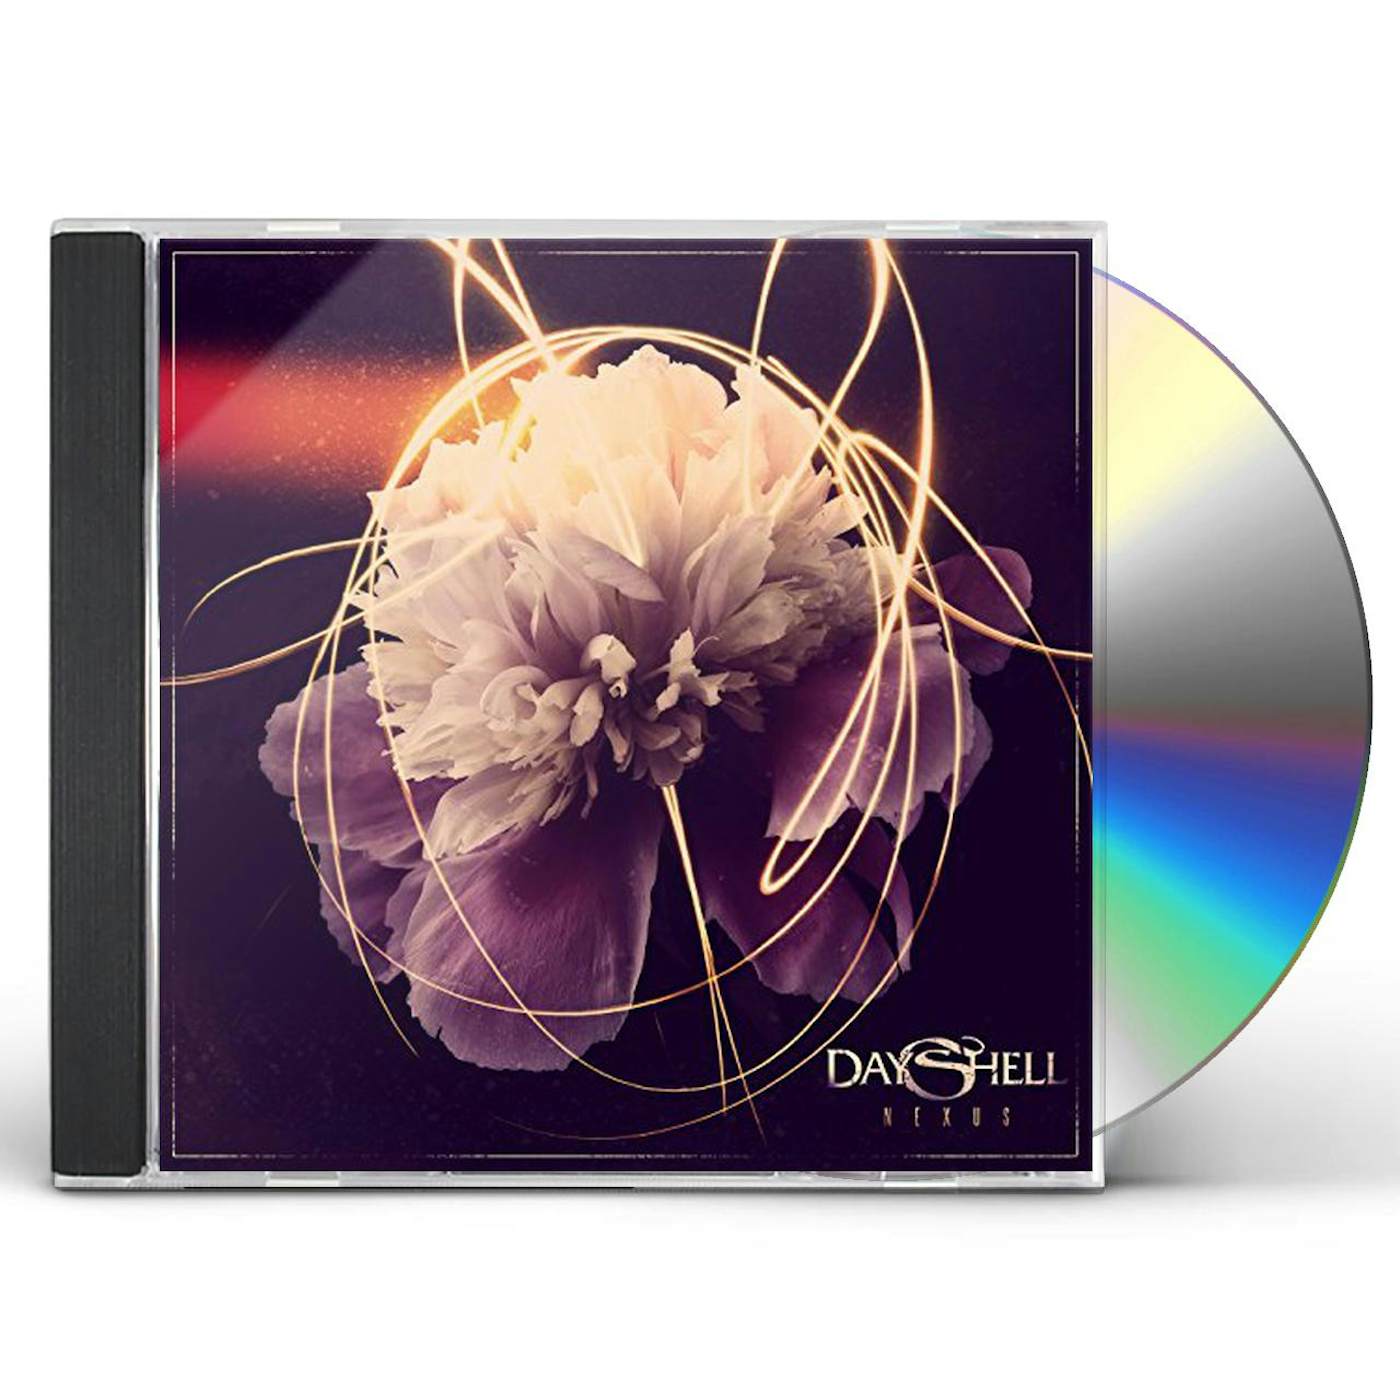 Dayshell NEXUS CD